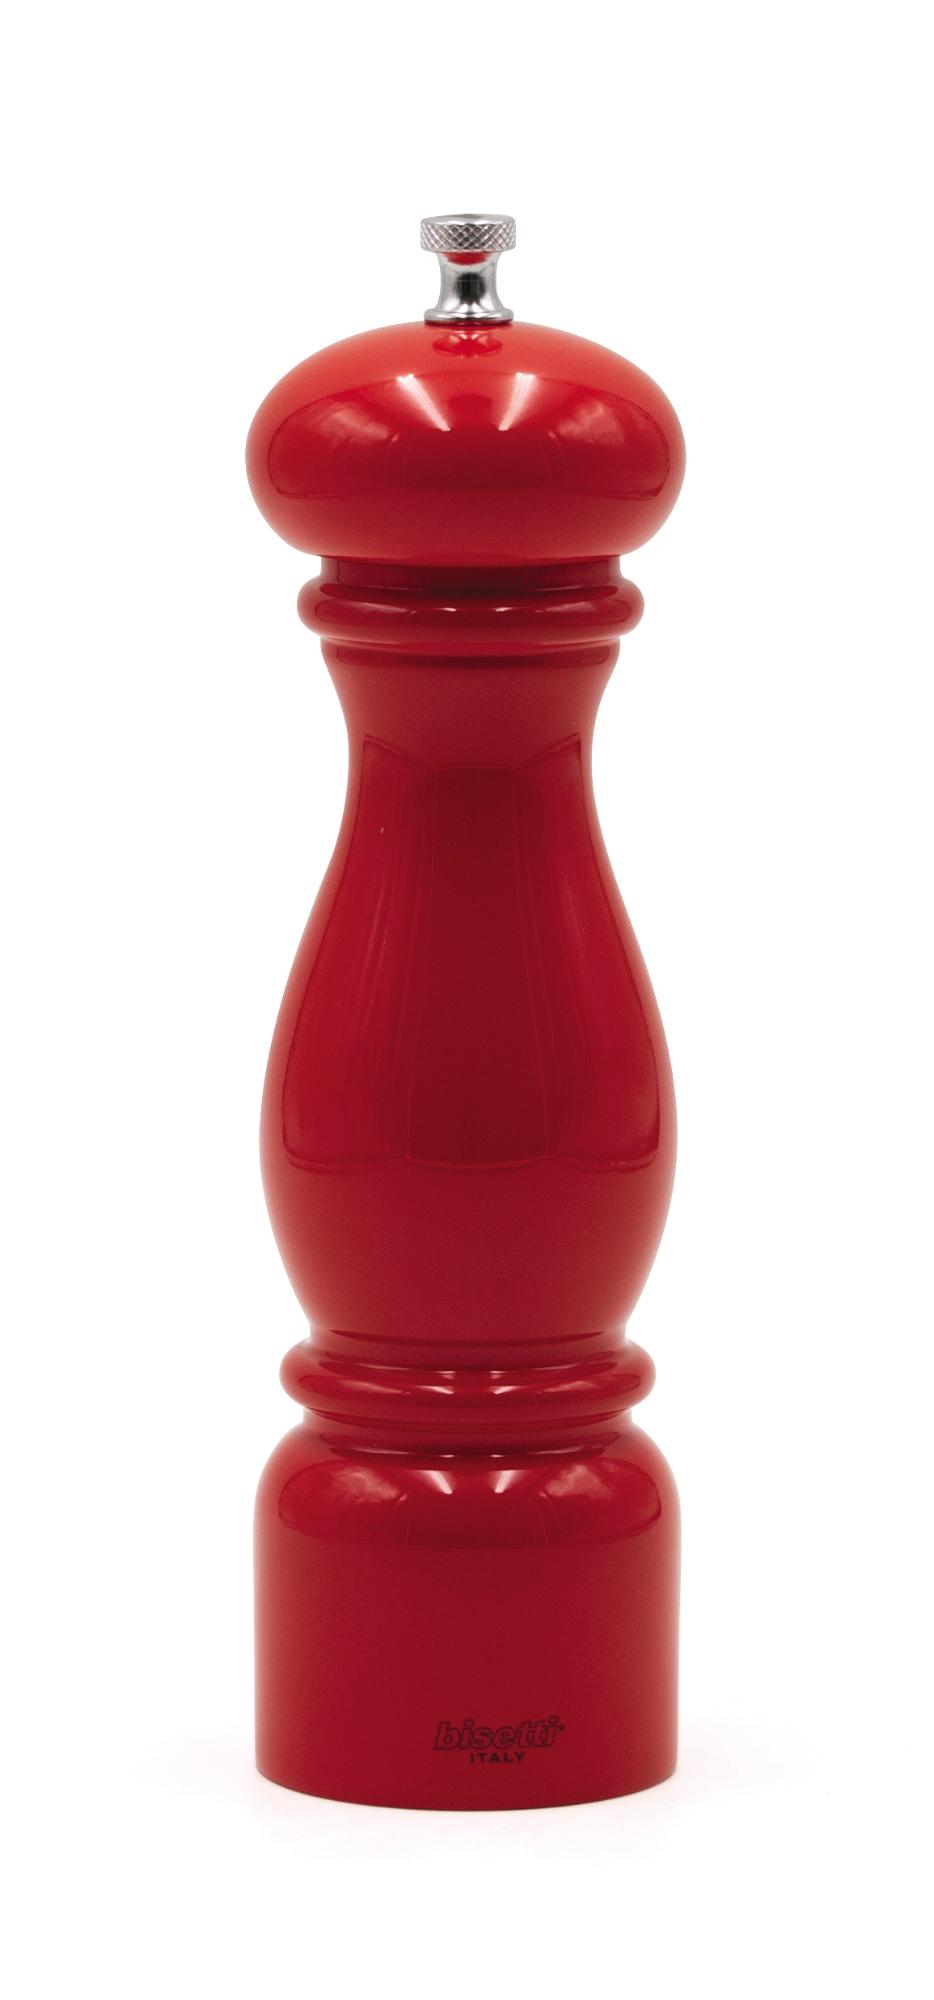 Firenze pepper mill, red, 220mm